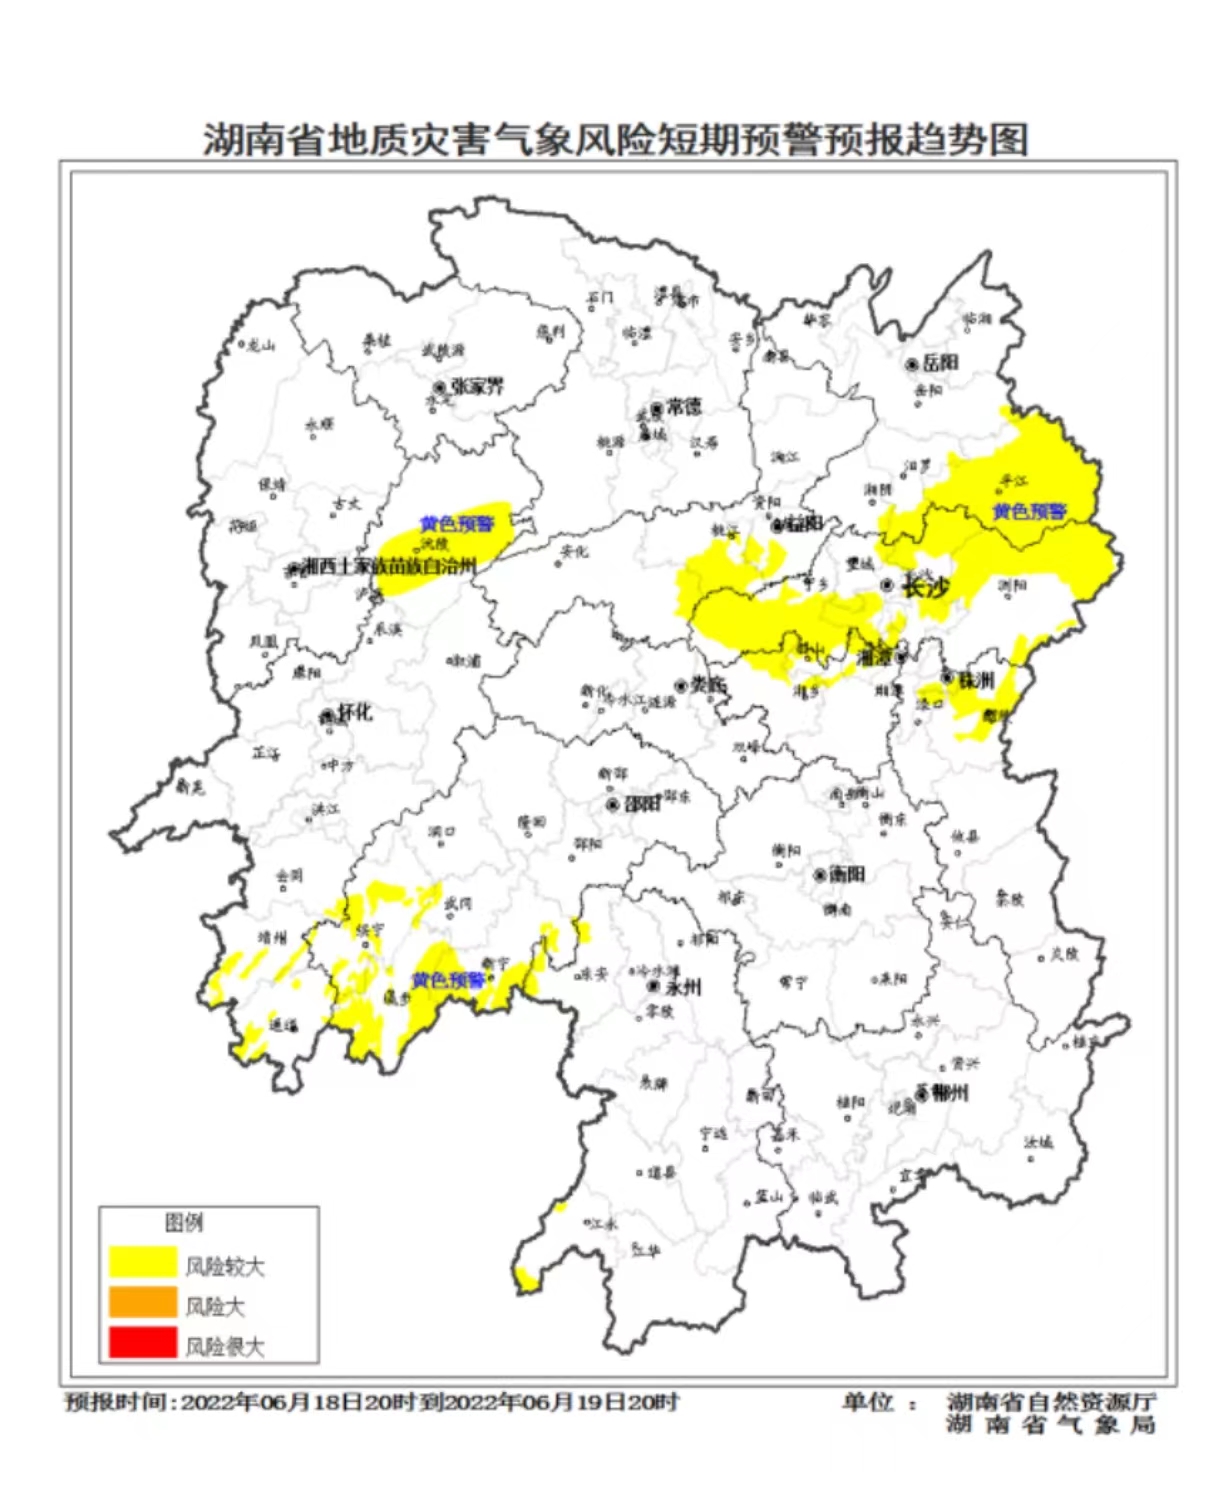 提醒！湘西、湘中、湘东北部分区域发生突发性地质灾害风险较大